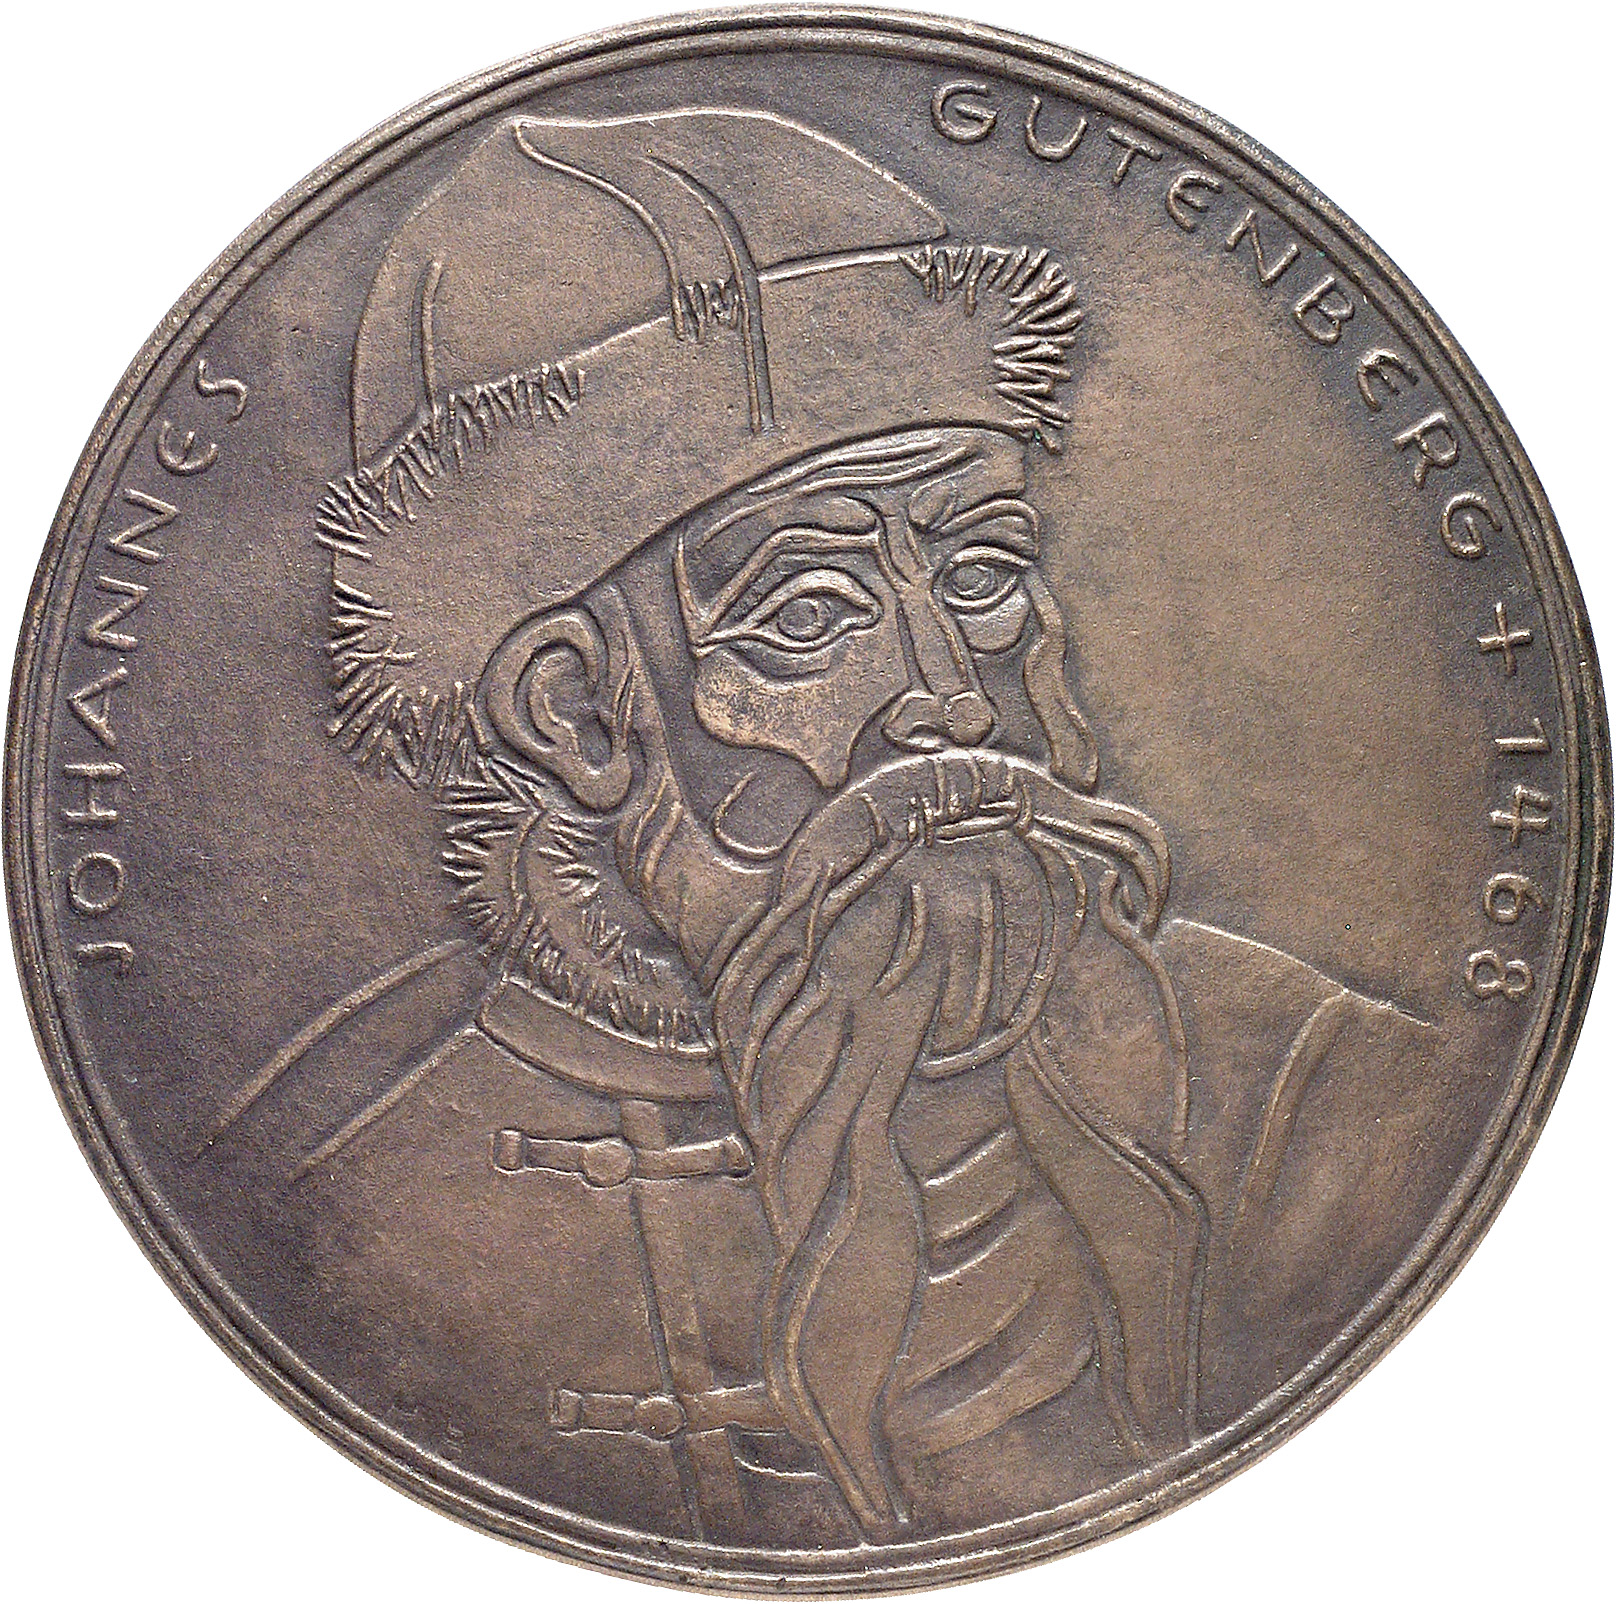 Broer, Hilde: Johannes Gutenberg